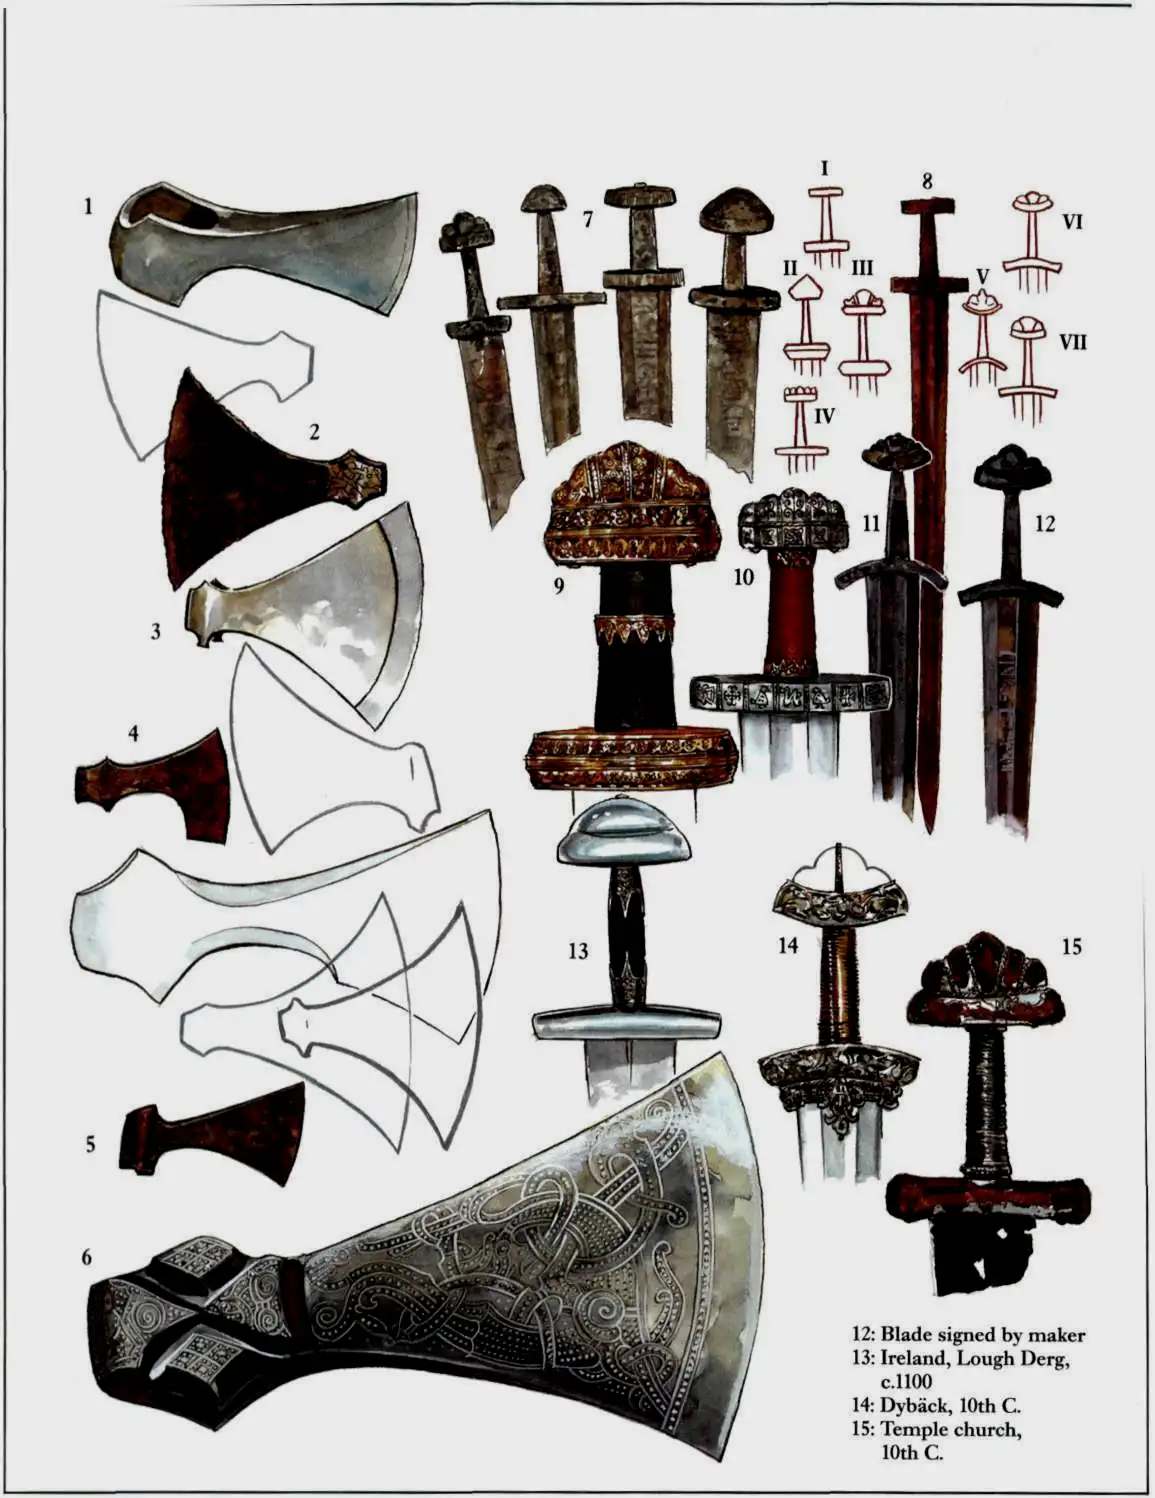 发现于维京墓葬的剑柄，在这些铁柄外面还会包裹木柄或者兽骨、兽角柄，外面还会再缠绕一些丝织物方便抓握。不过这些有机物已经消失很久了。